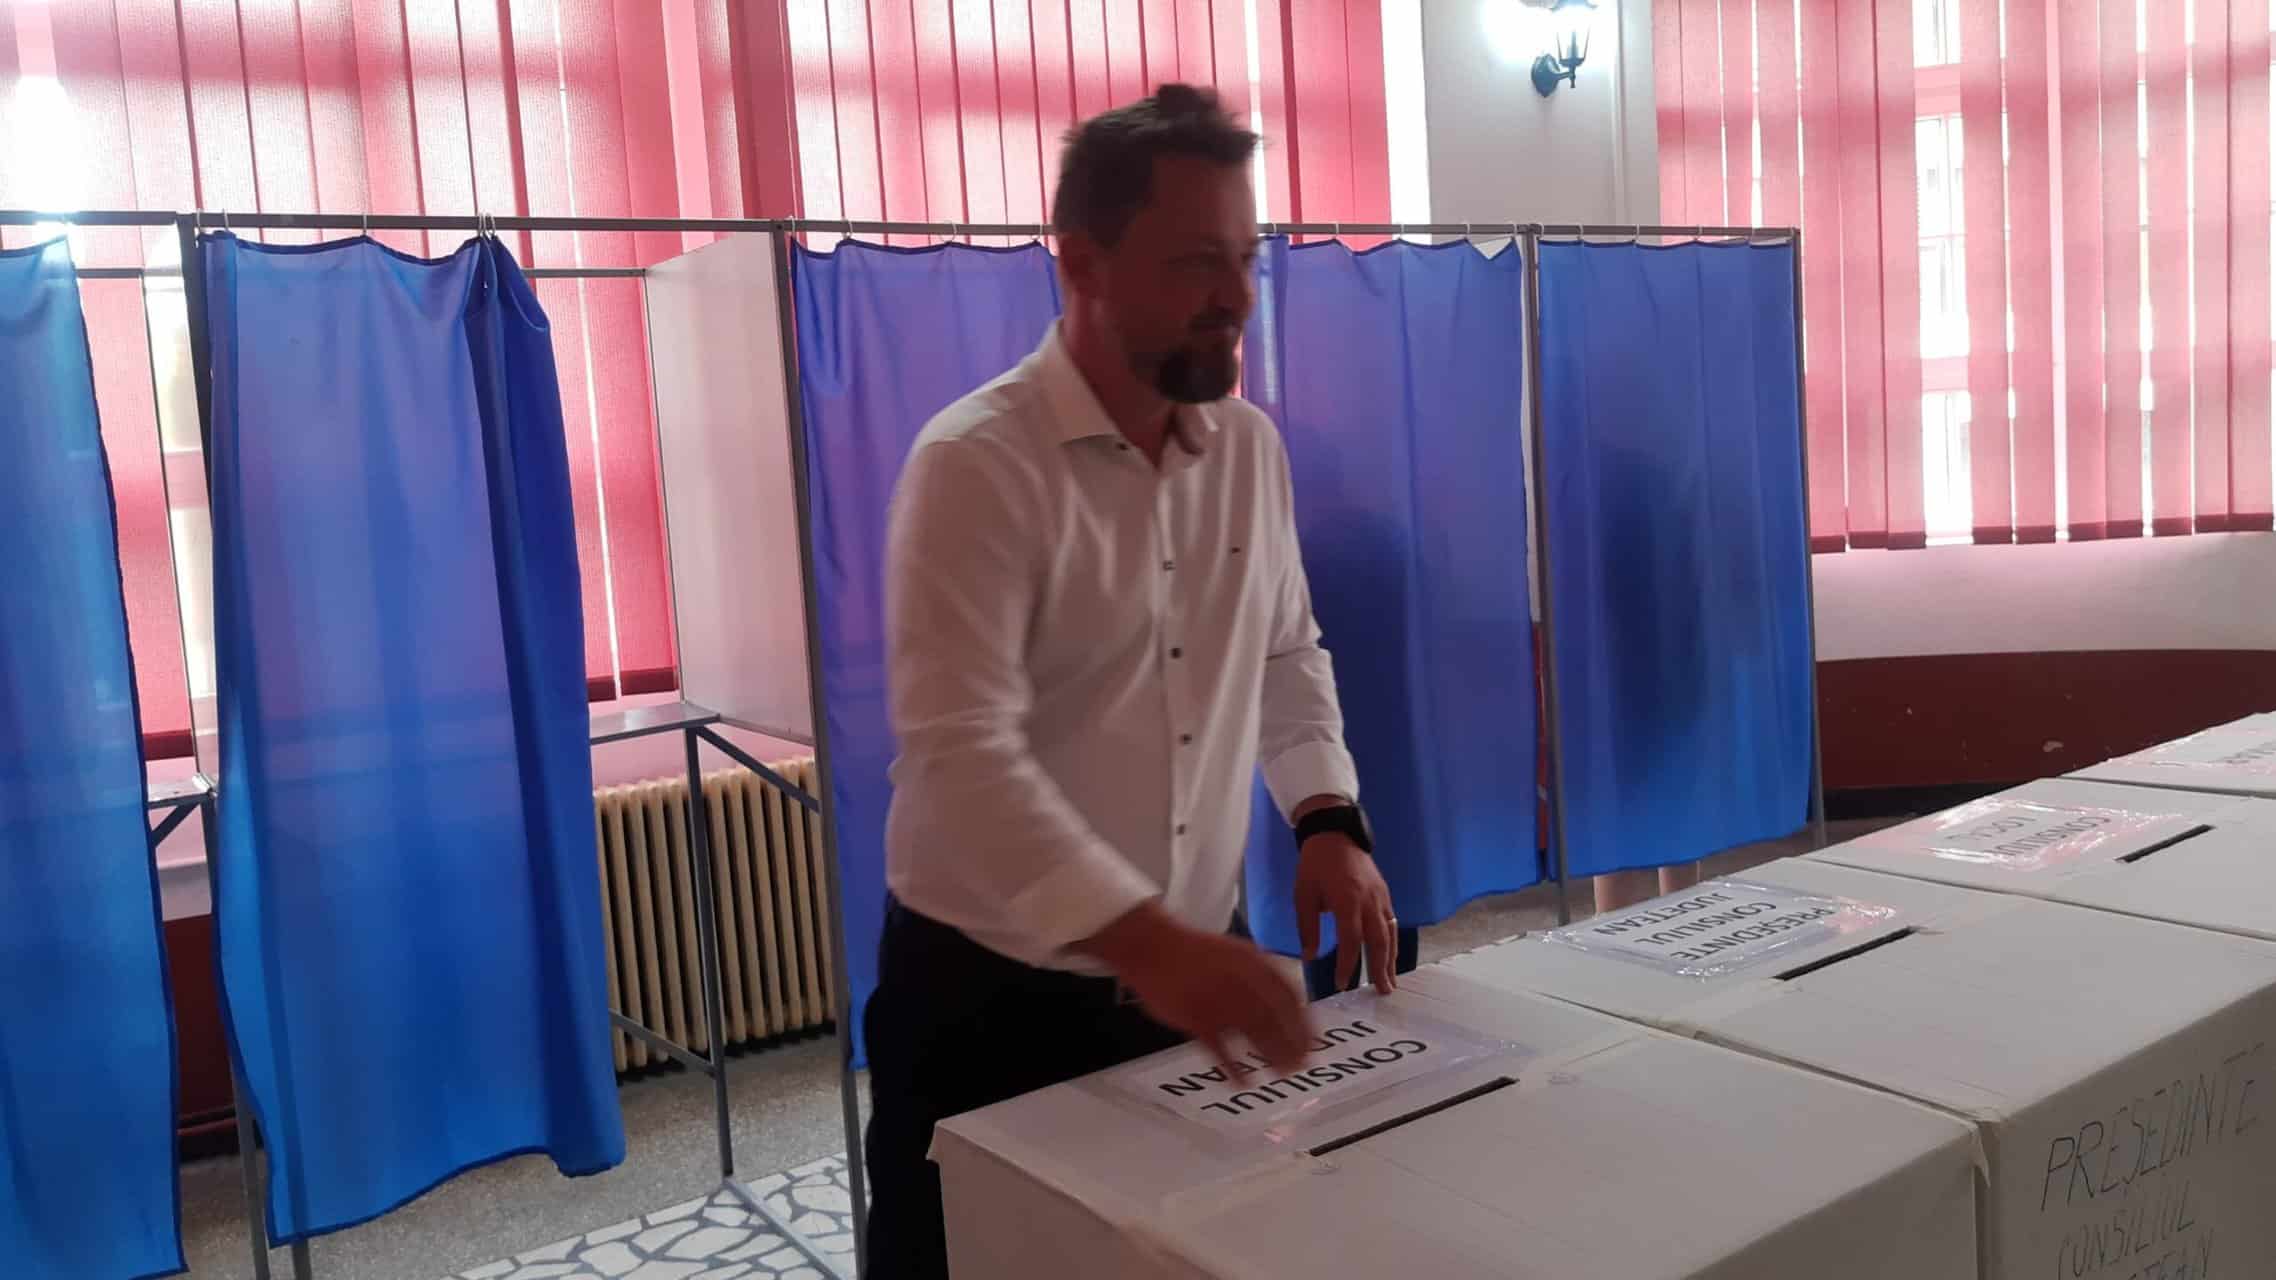 singurul candidat independent la primăria sibiu, la ieșirea de la votare. alexandru găvozdea: „o să stau cu familia” (video)